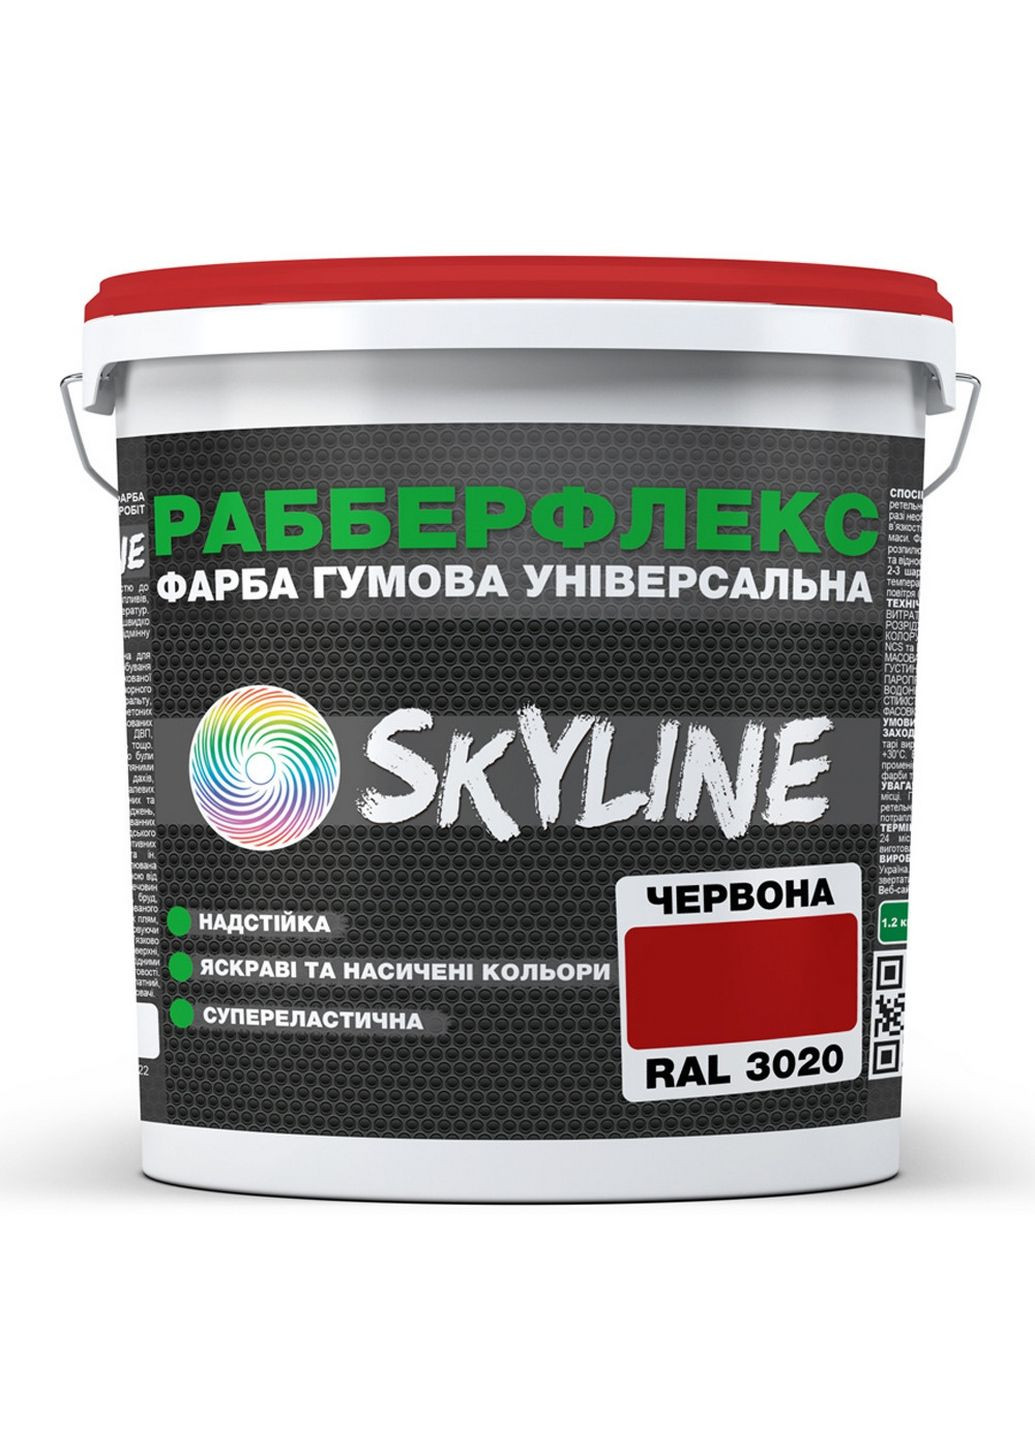 Надстійка фарба гумова супереластична «РабберФлекс» 3,6 кг SkyLine (283326419)